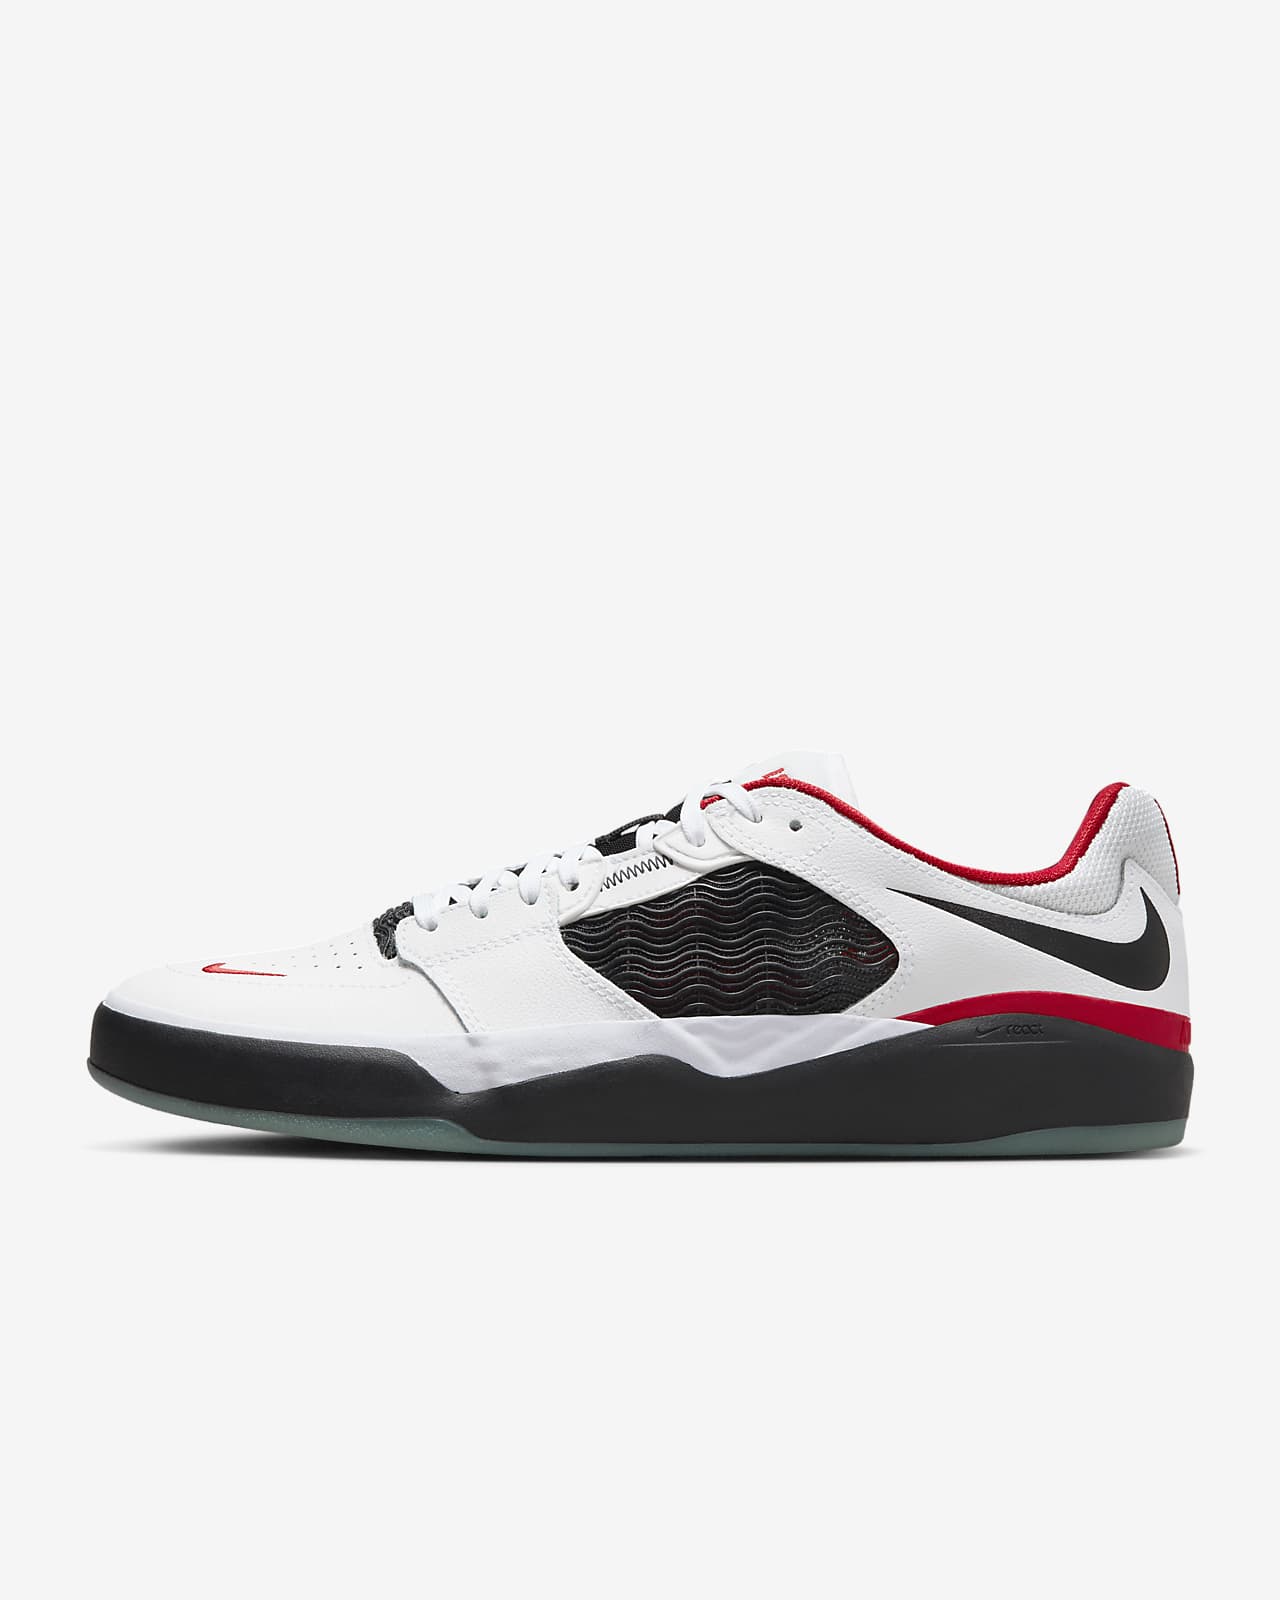 aan de andere kant, Ooit kever Nike SB Ishod Wair Premium Skate Shoes. Nike JP